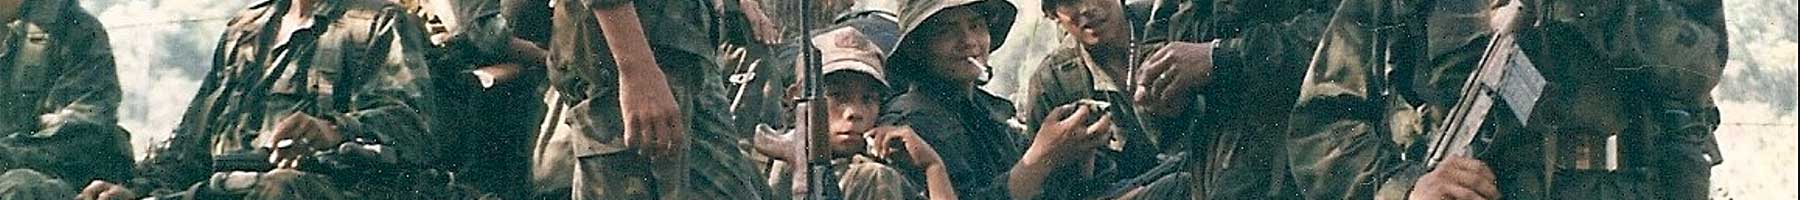 Members of the Nicaraguan Contra in 1987